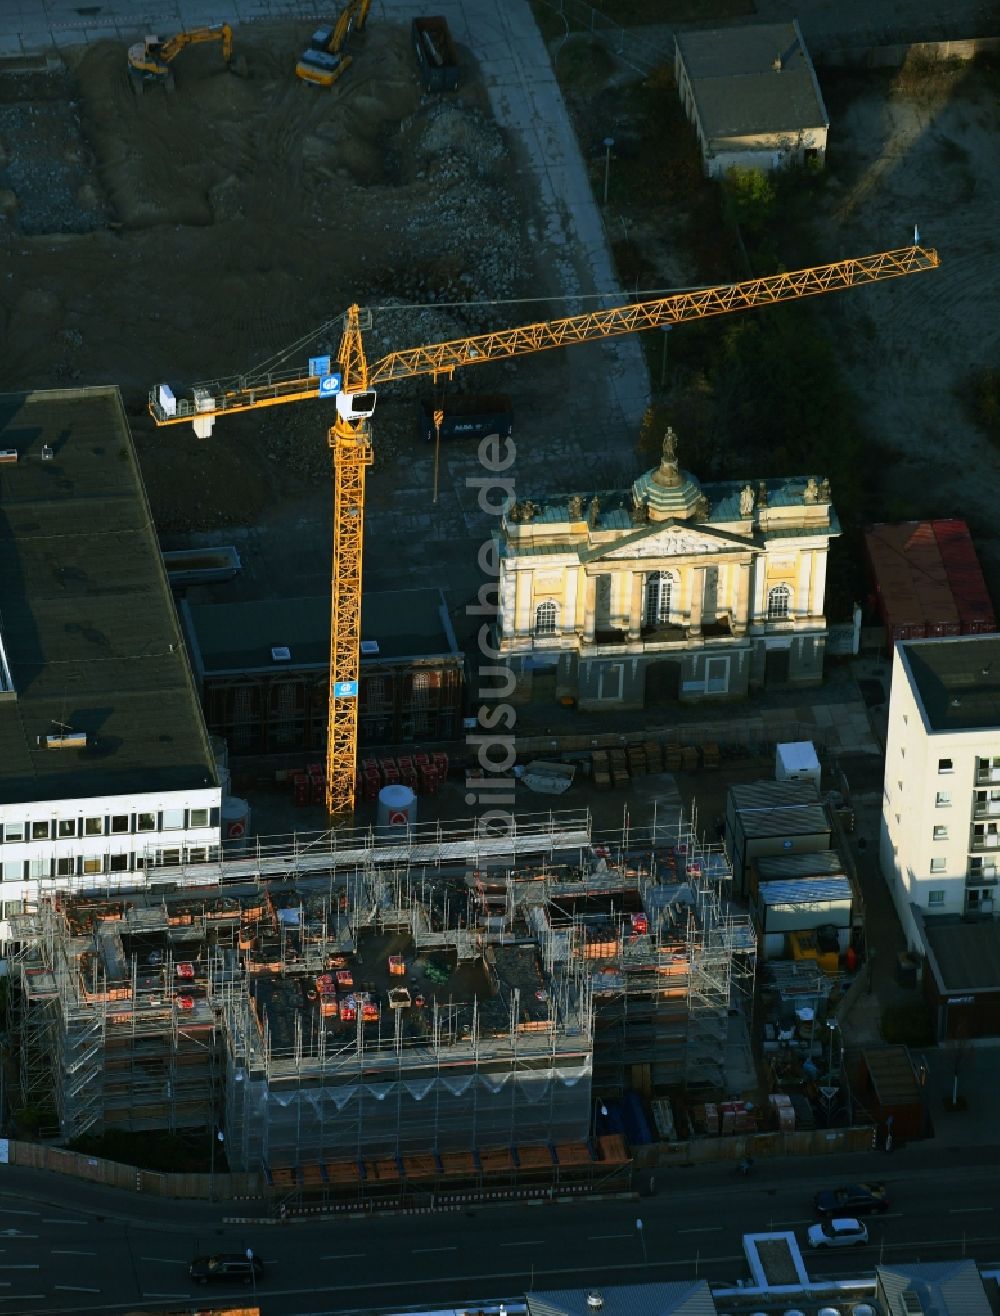 Luftbild Potsdam - Baustelle zum Wiederaufbau der Garnisonkirche Potsdam in Potsdam im Bundesland Brandenburg, Deutschland